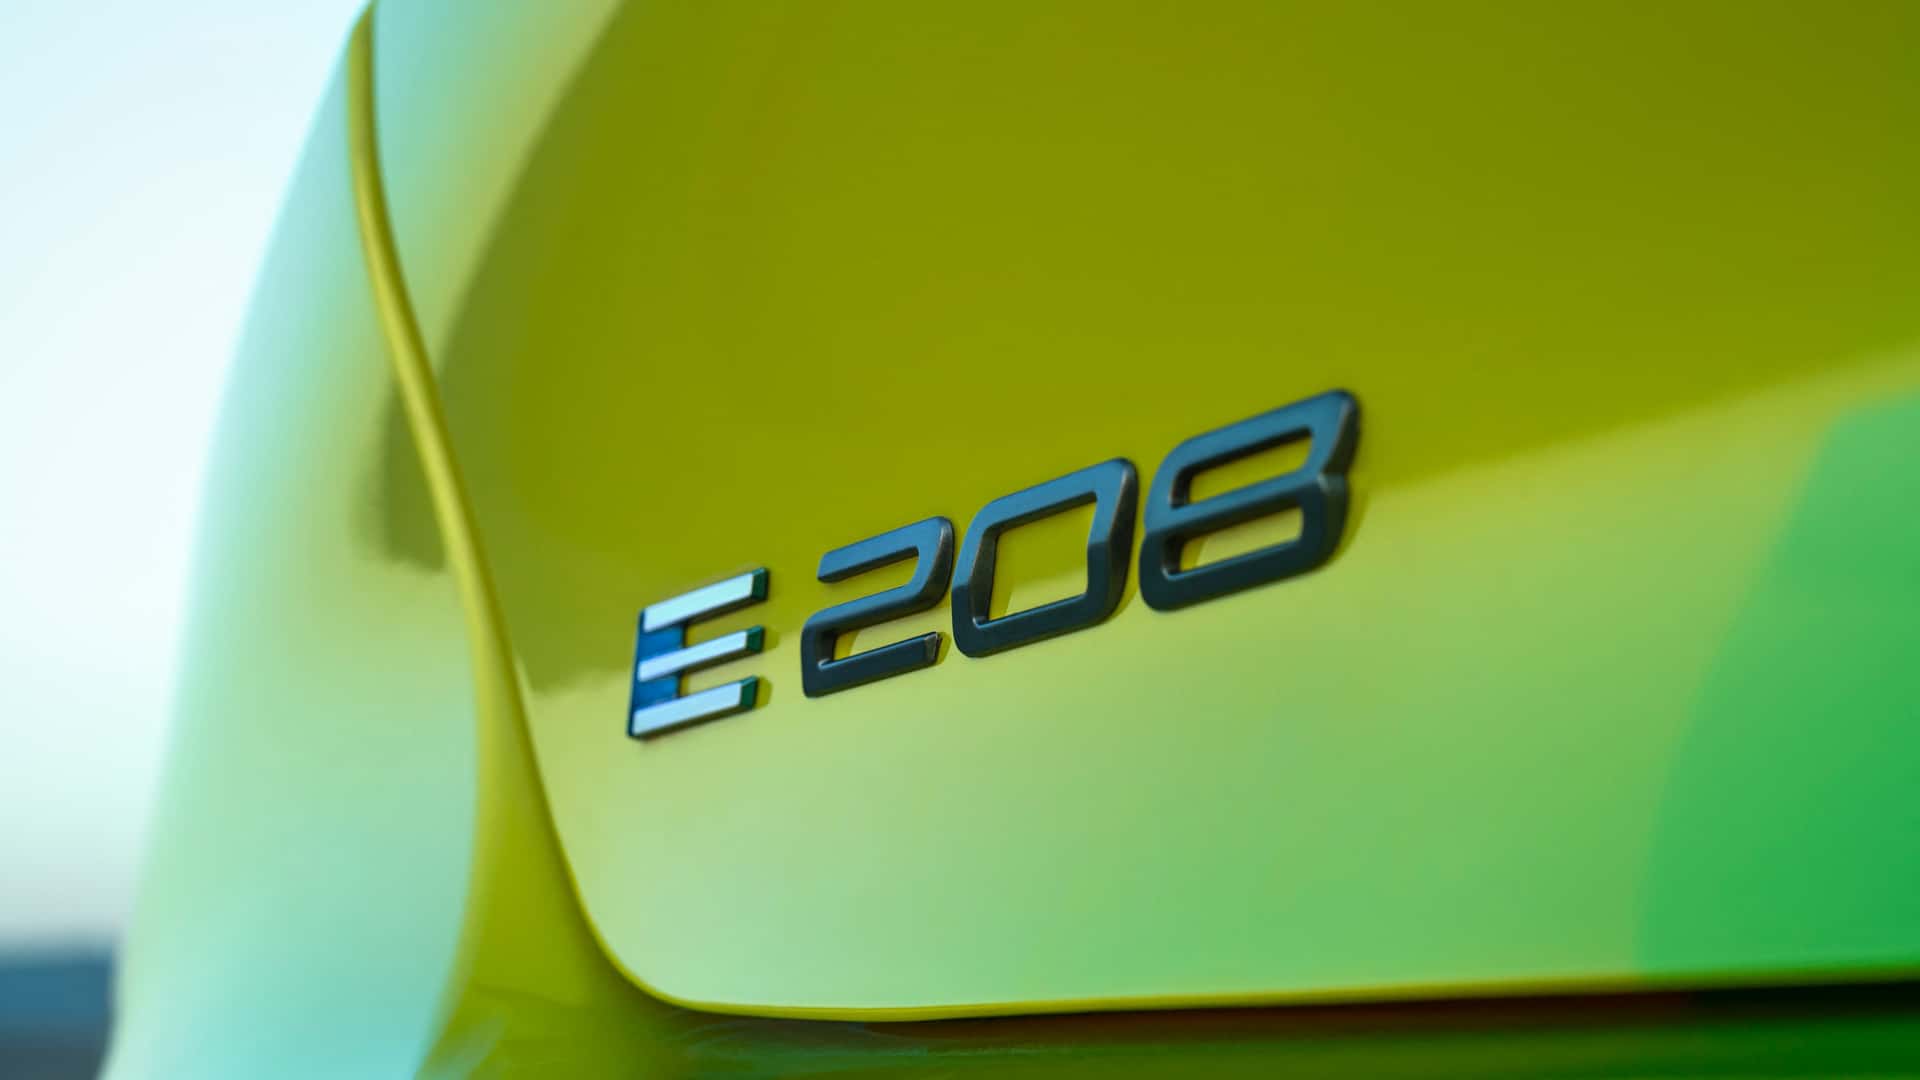 Makyajlı Peugeot 208 tanıtıldı: Yenilenen tasarım, yeni hibrit motorlar